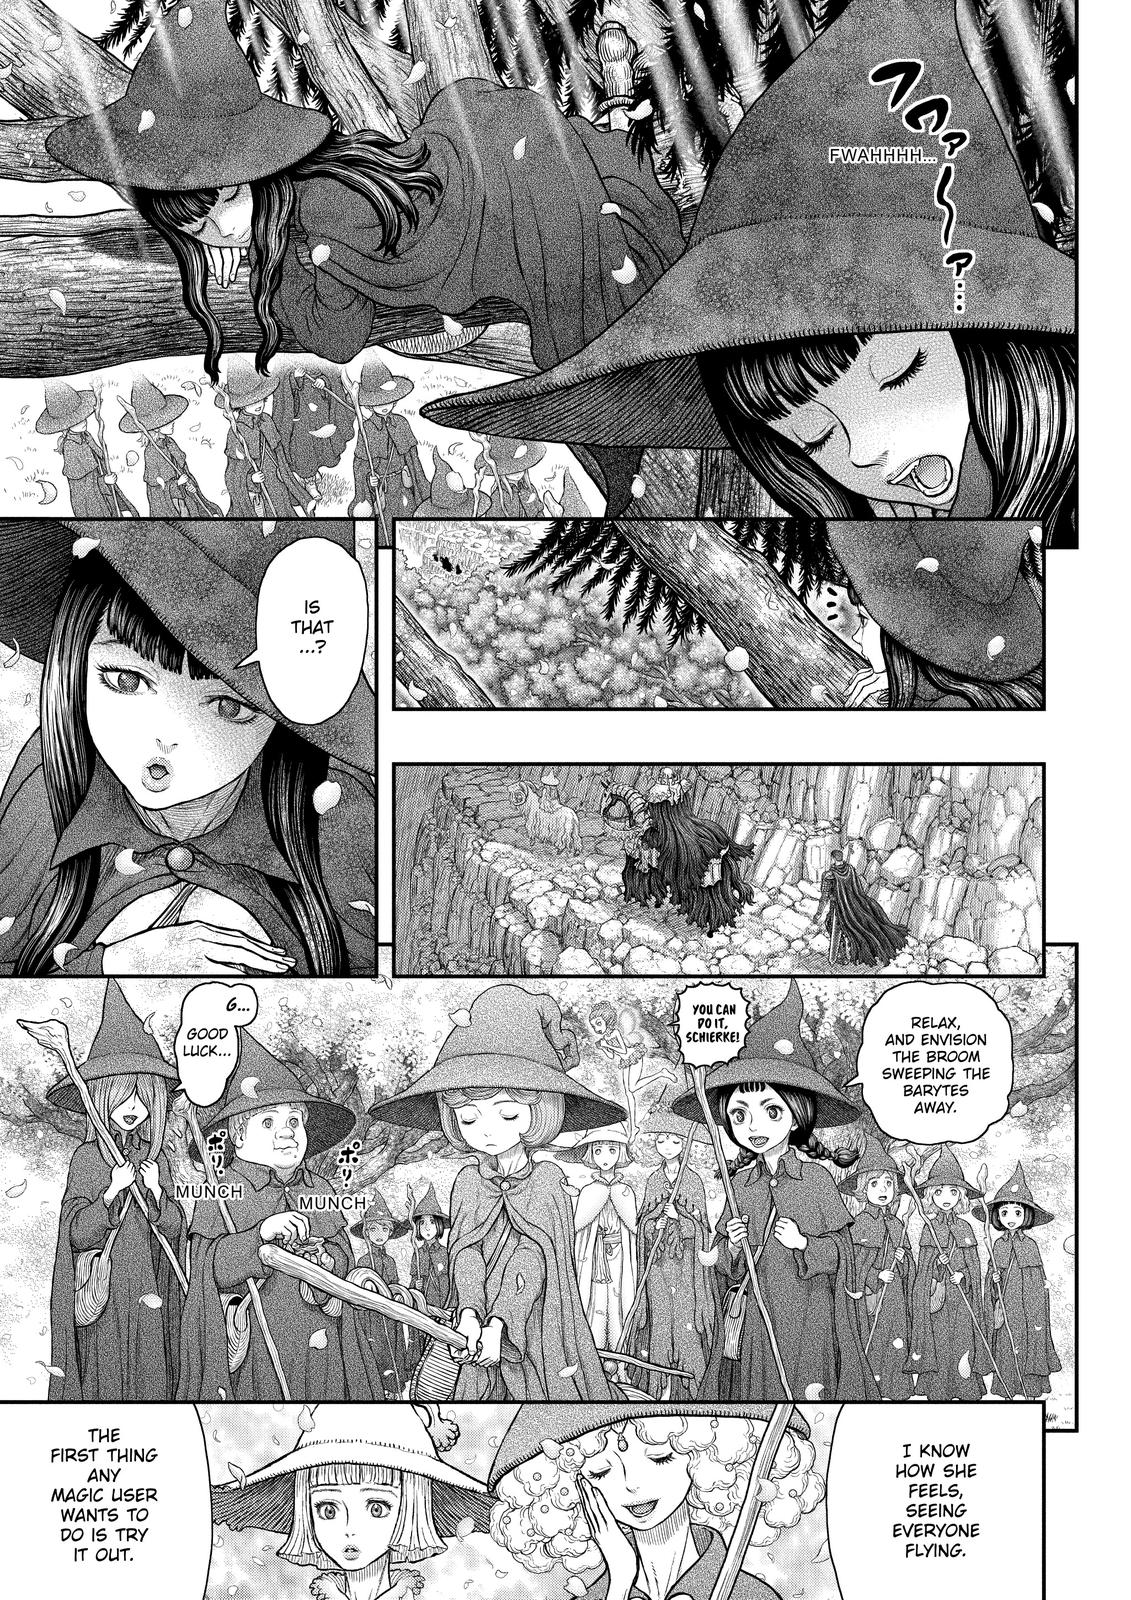 Berserk Manga Chapter 361 image 05